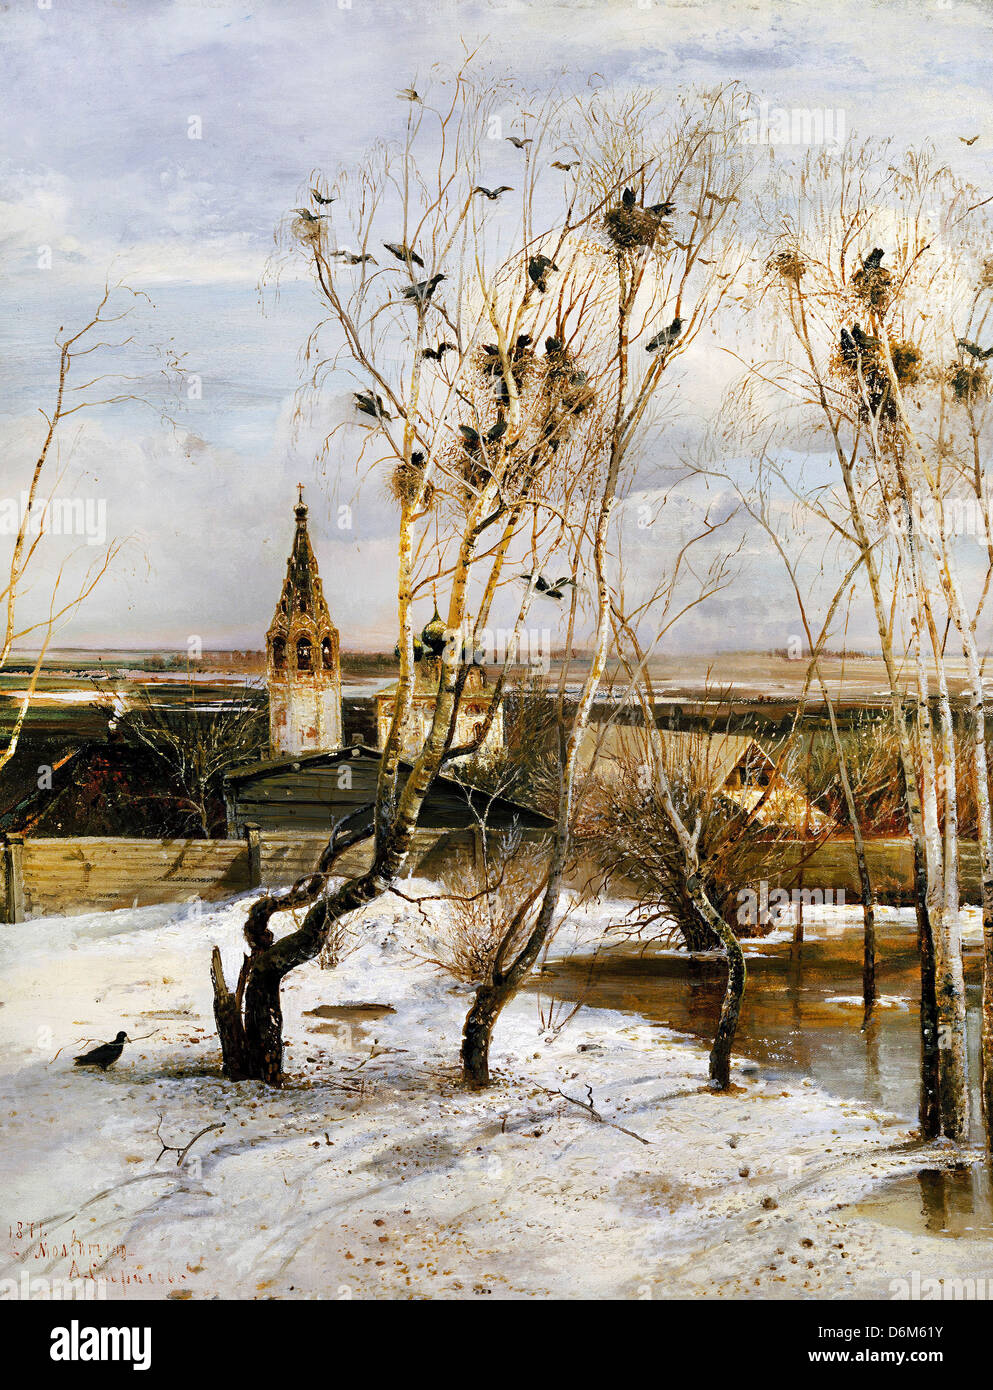 Alexeï Savrassov, Freux sont retournés 1871 Huile sur toile. Galerie Tretiakov, Moscou, Russie Banque D'Images